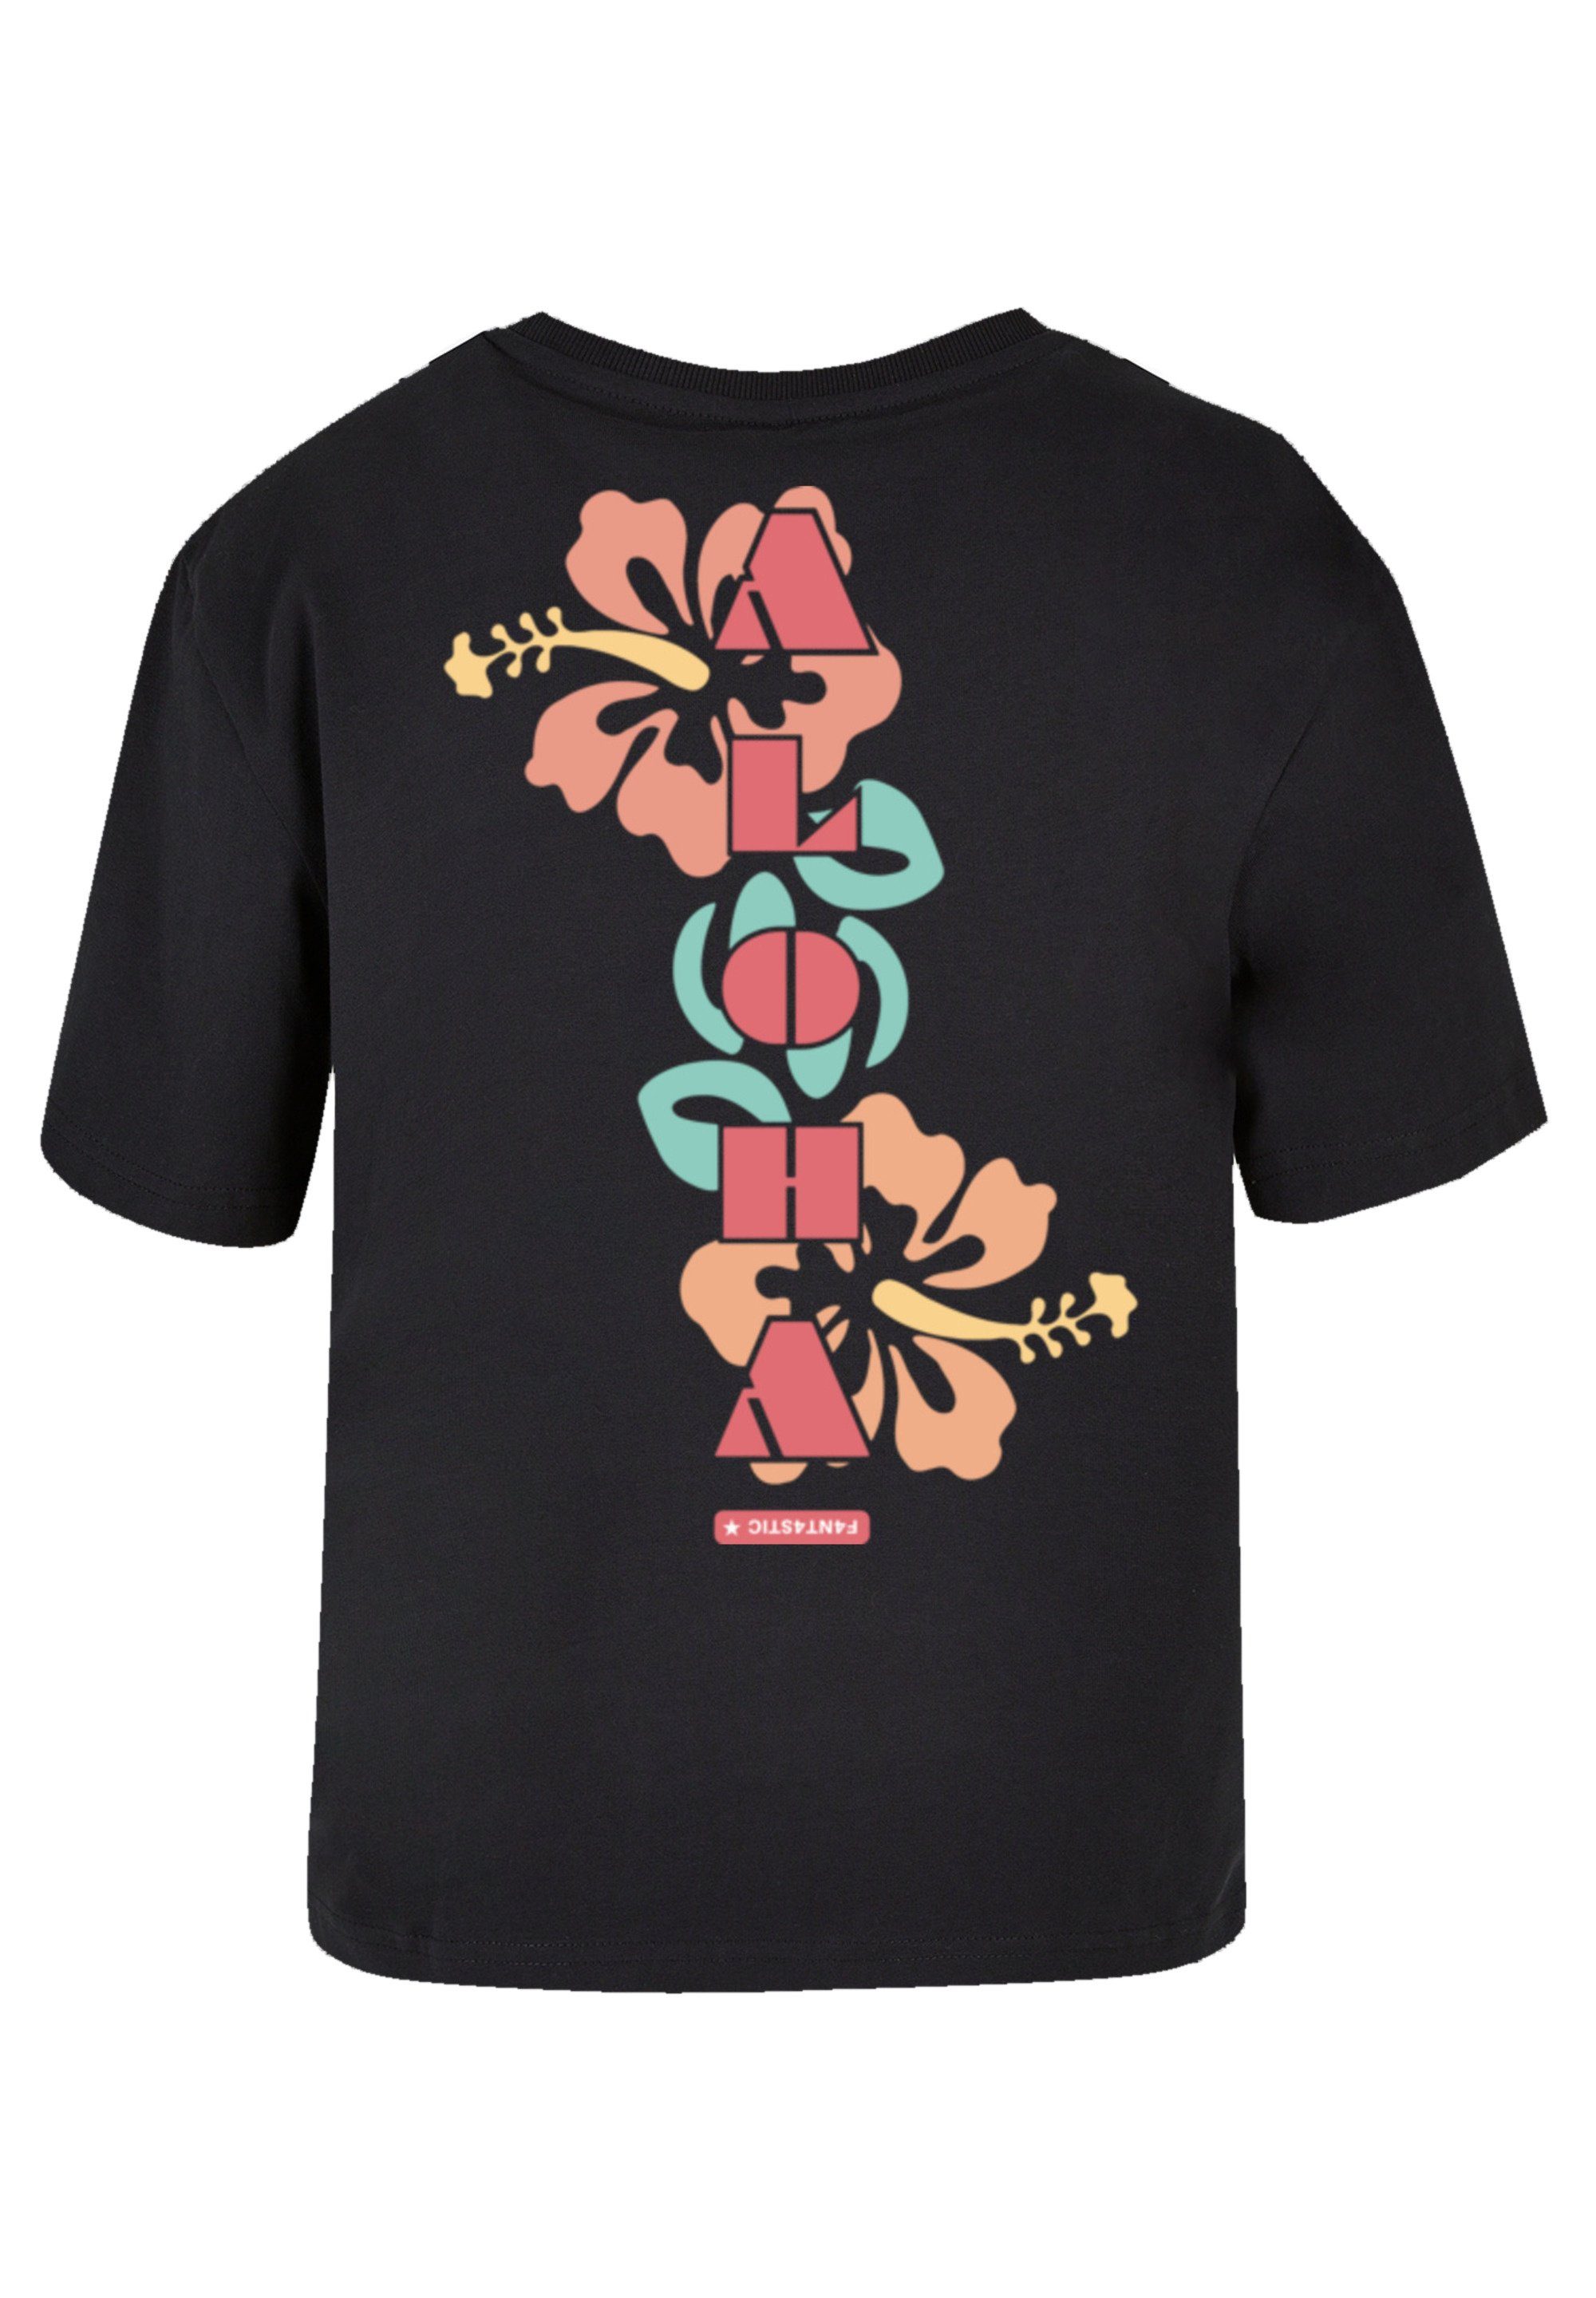 PLUS eine weit bitte F4NT4STIC SIZE T-Shirt Größe aus, Fällt kleiner Aloha Print, bestellen